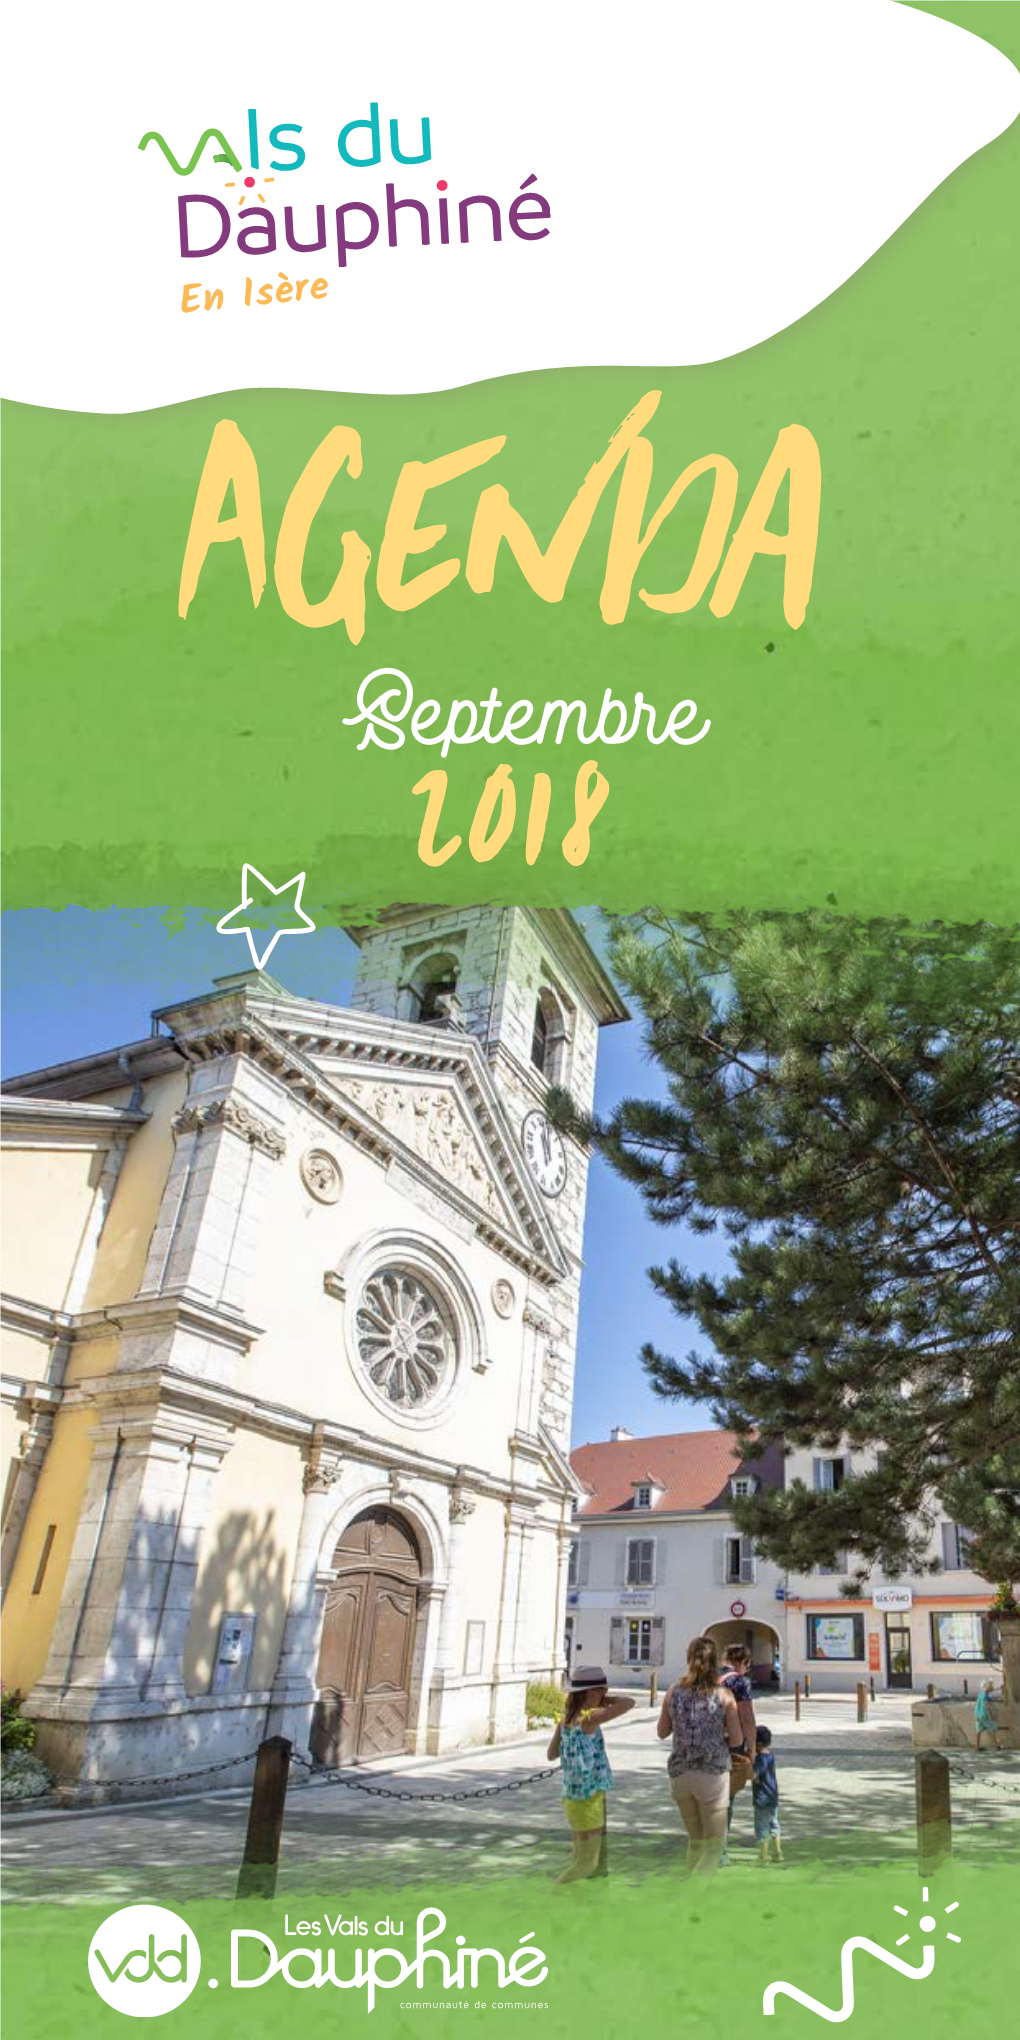 Agenda Septembre Facebook : Valsdudauphinetourisme 2018 Expositions